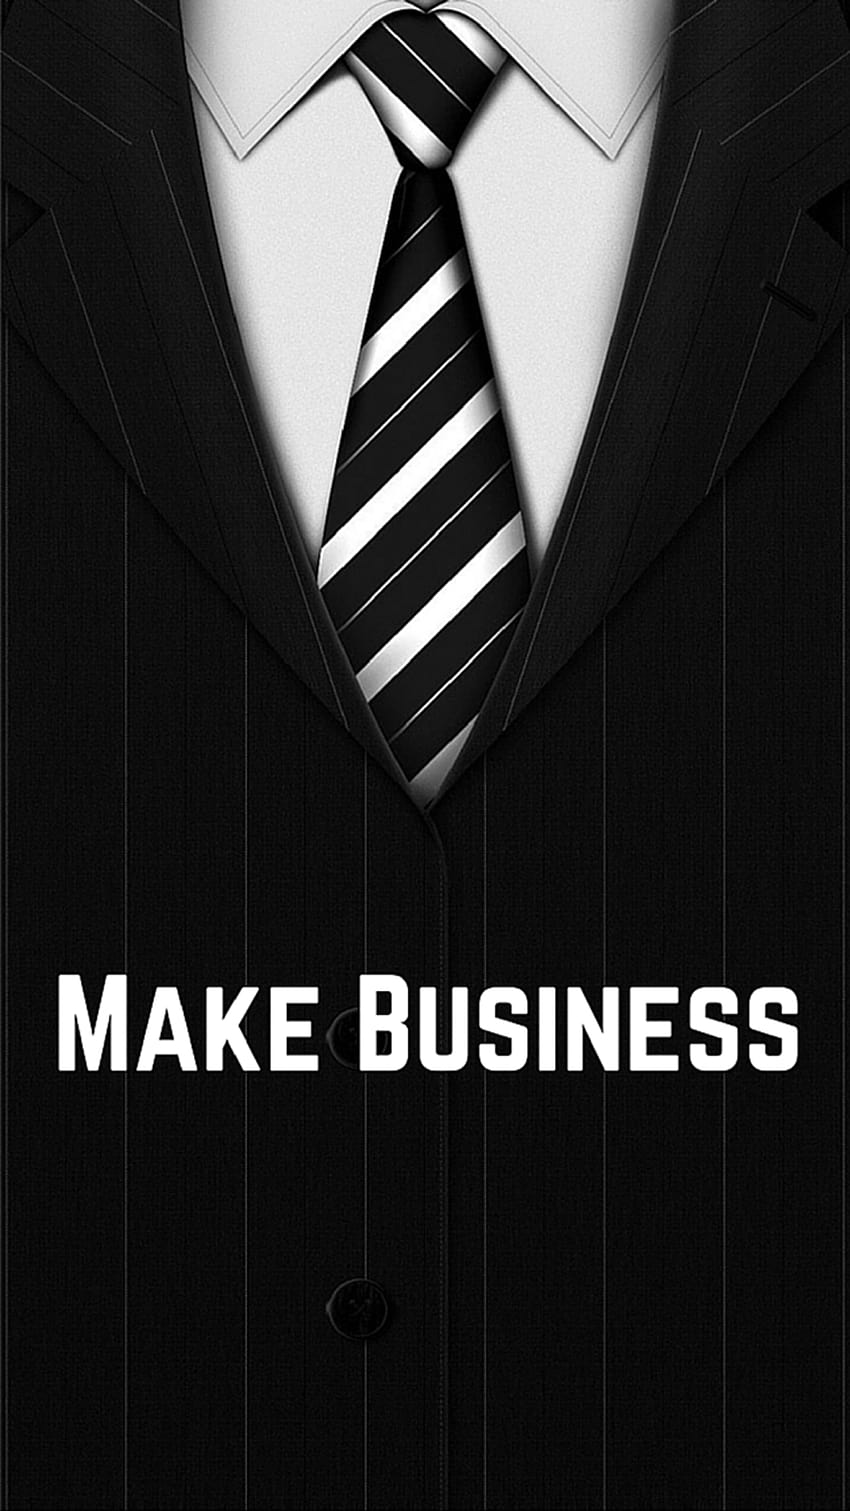 ↑↑TIPP UND HOL DIR DIE APP! Art Creative Quote Business Krawatte Anzug Hemd Schwarz Weiß iPhone 6 Plus, Herren Business HD-Handy-Hintergrundbild